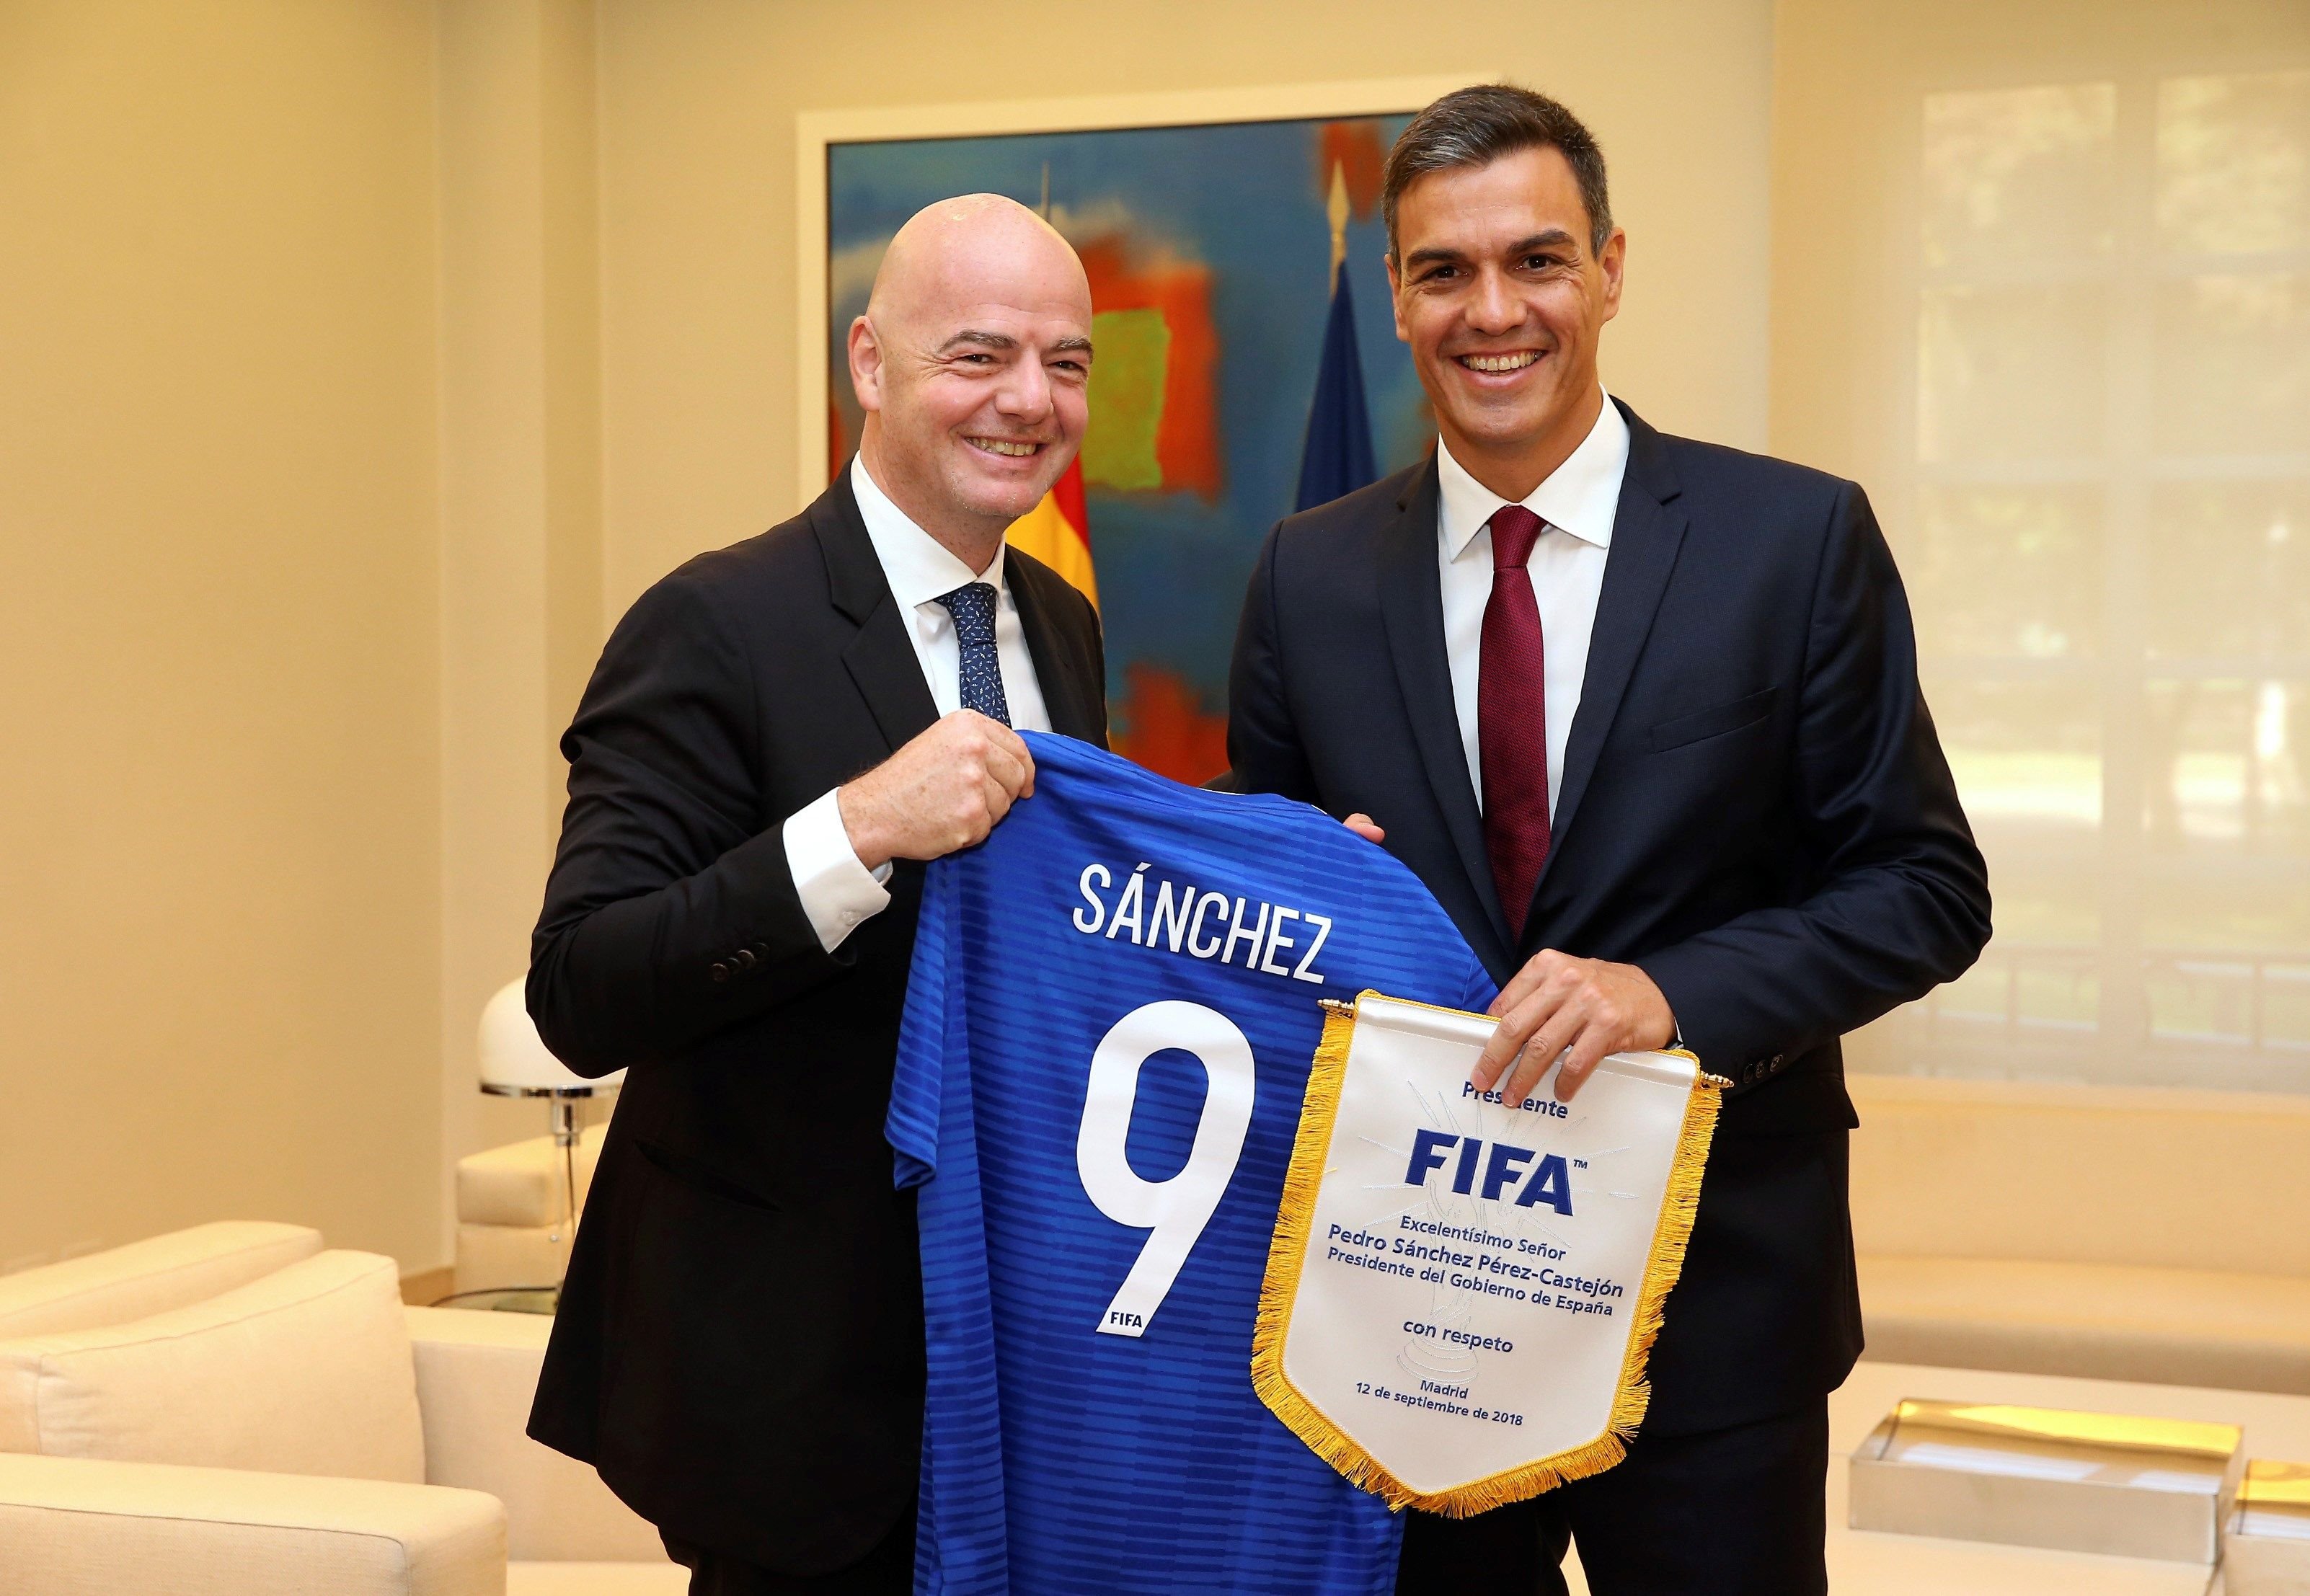 España presentará candidatura para organizar el Mundial de fútbol del 2030